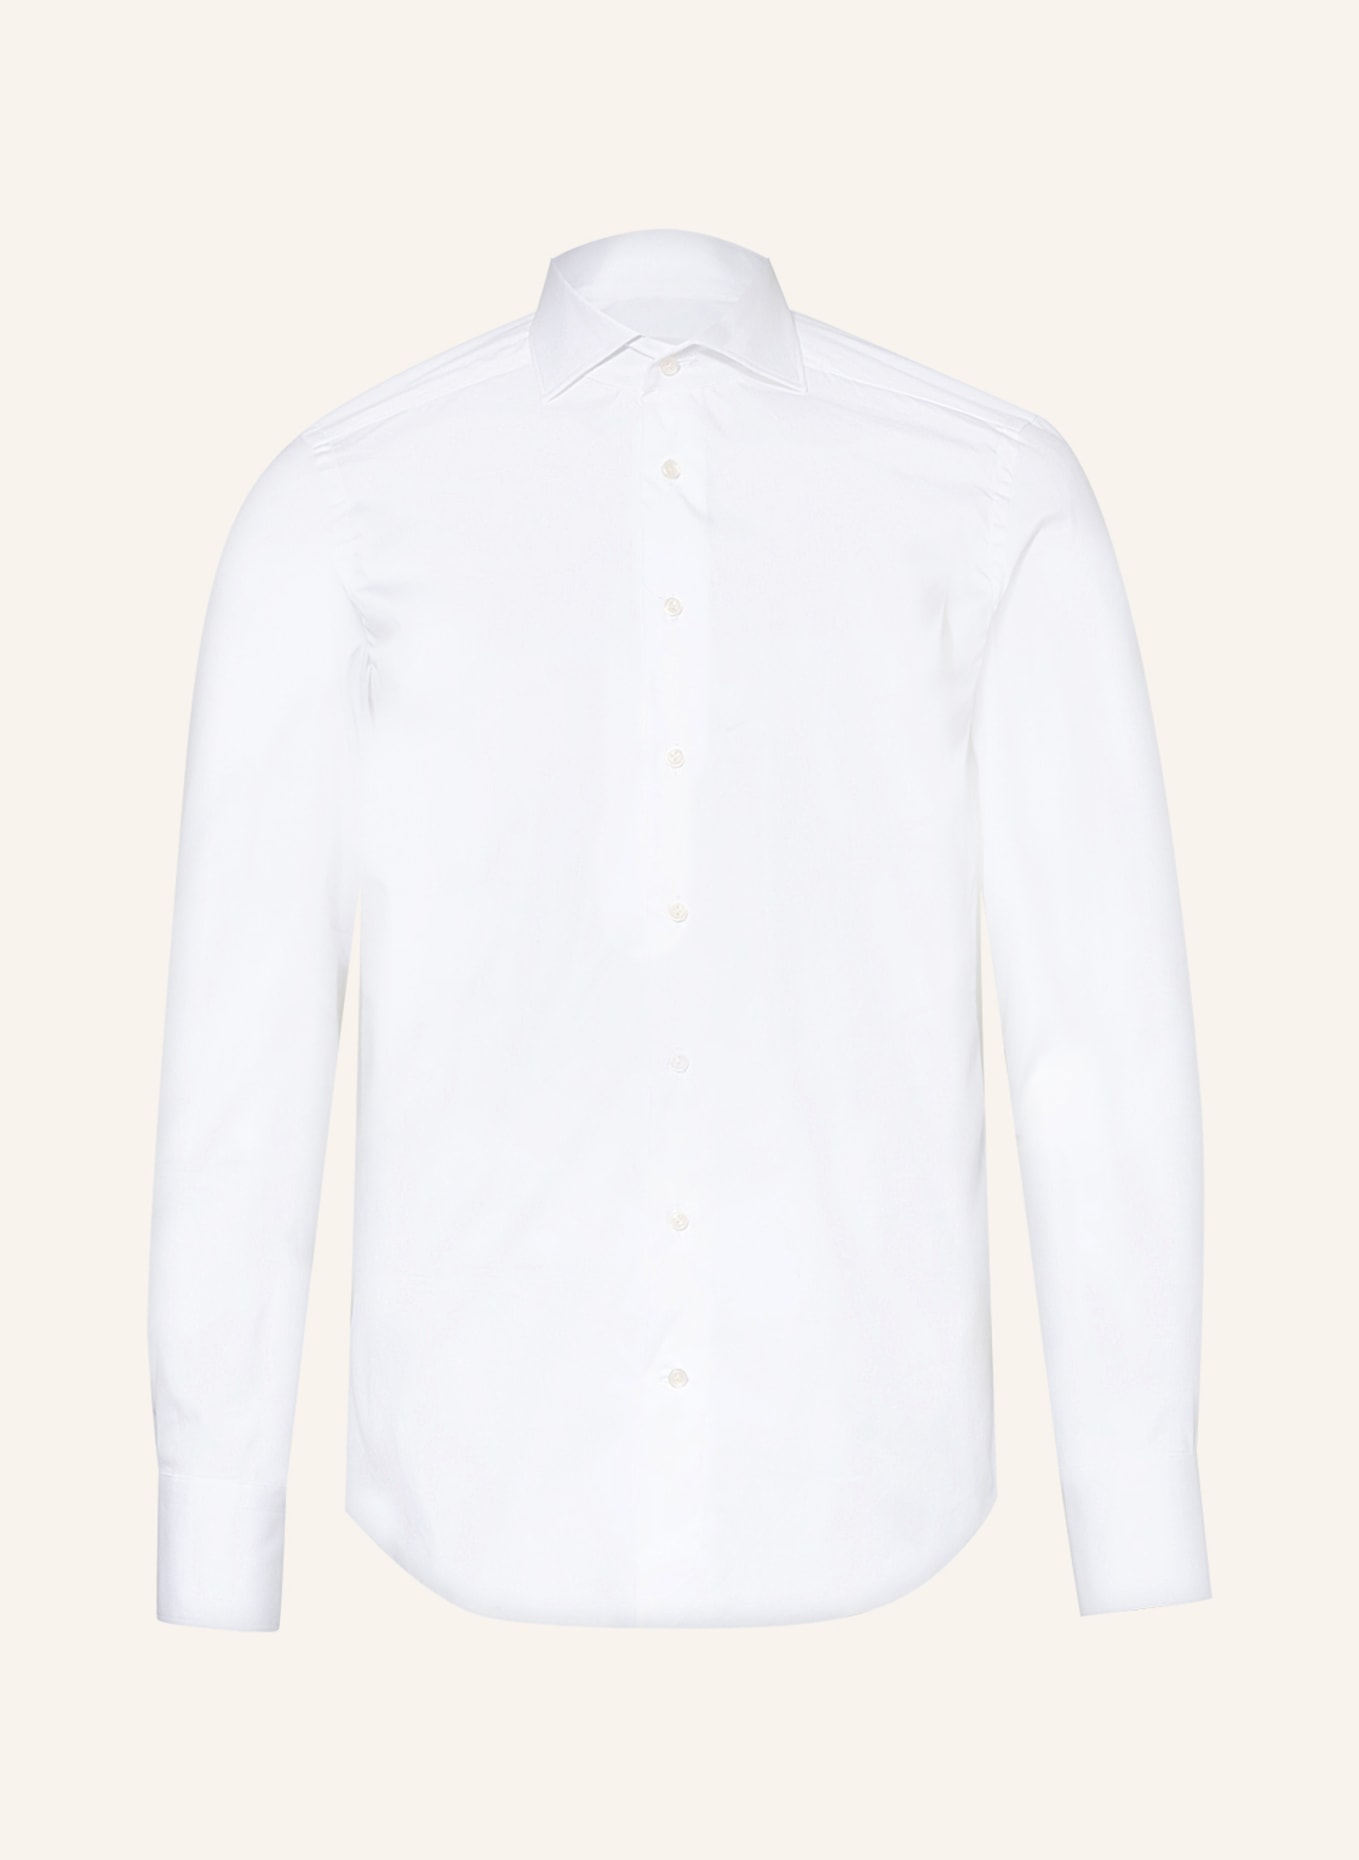 ARTIGIANO Shirt slim fit, Color: WHITE (Image 1)